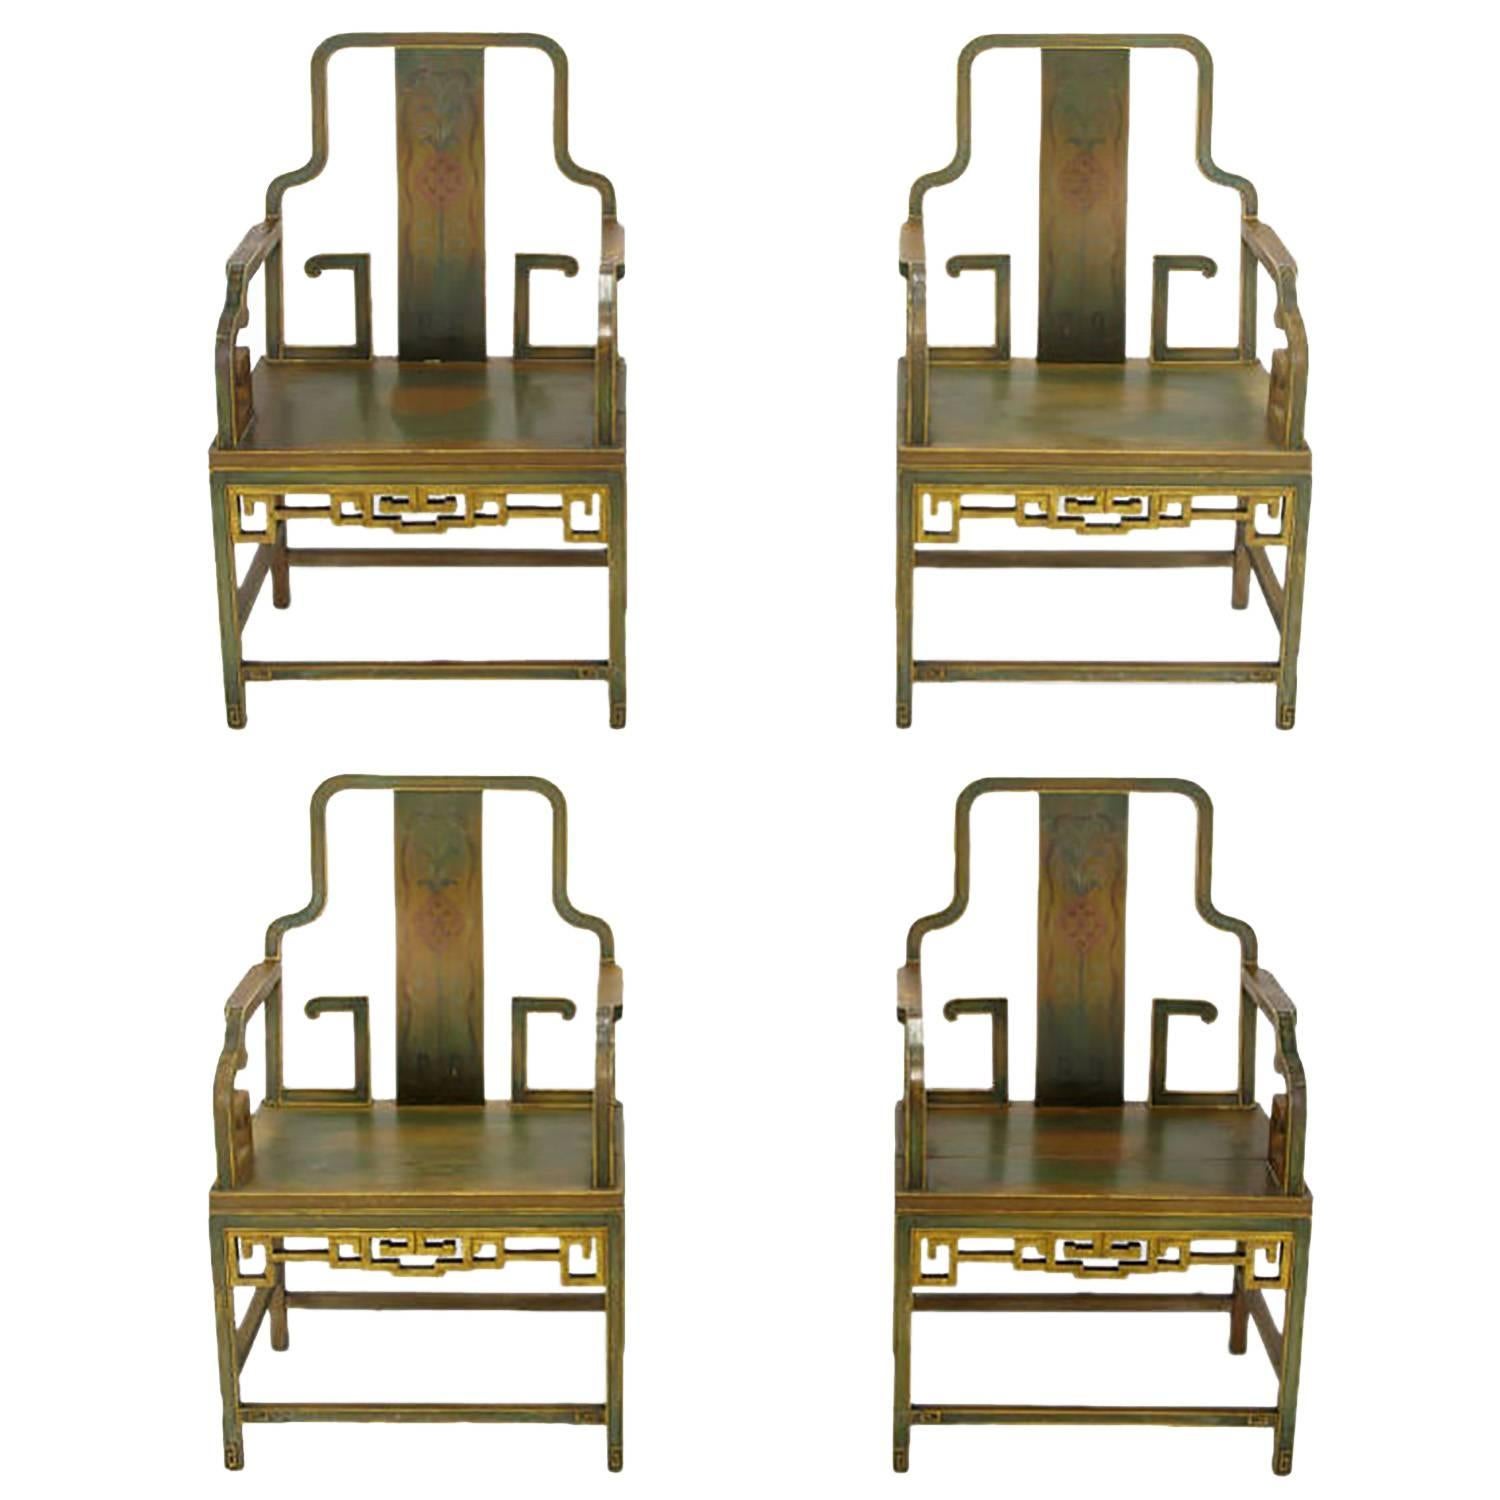 Diese vier lackierten und vergoldeten, chinesisch inspirierten Sessel mit ausgezeichneter Patina und Schnitzerei wurden ursprünglich im Kaufhaus Gump's in San Francisco erworben. Johan Tapp schuf in dieser Zeit Möbel für Gumps, aber der Hersteller